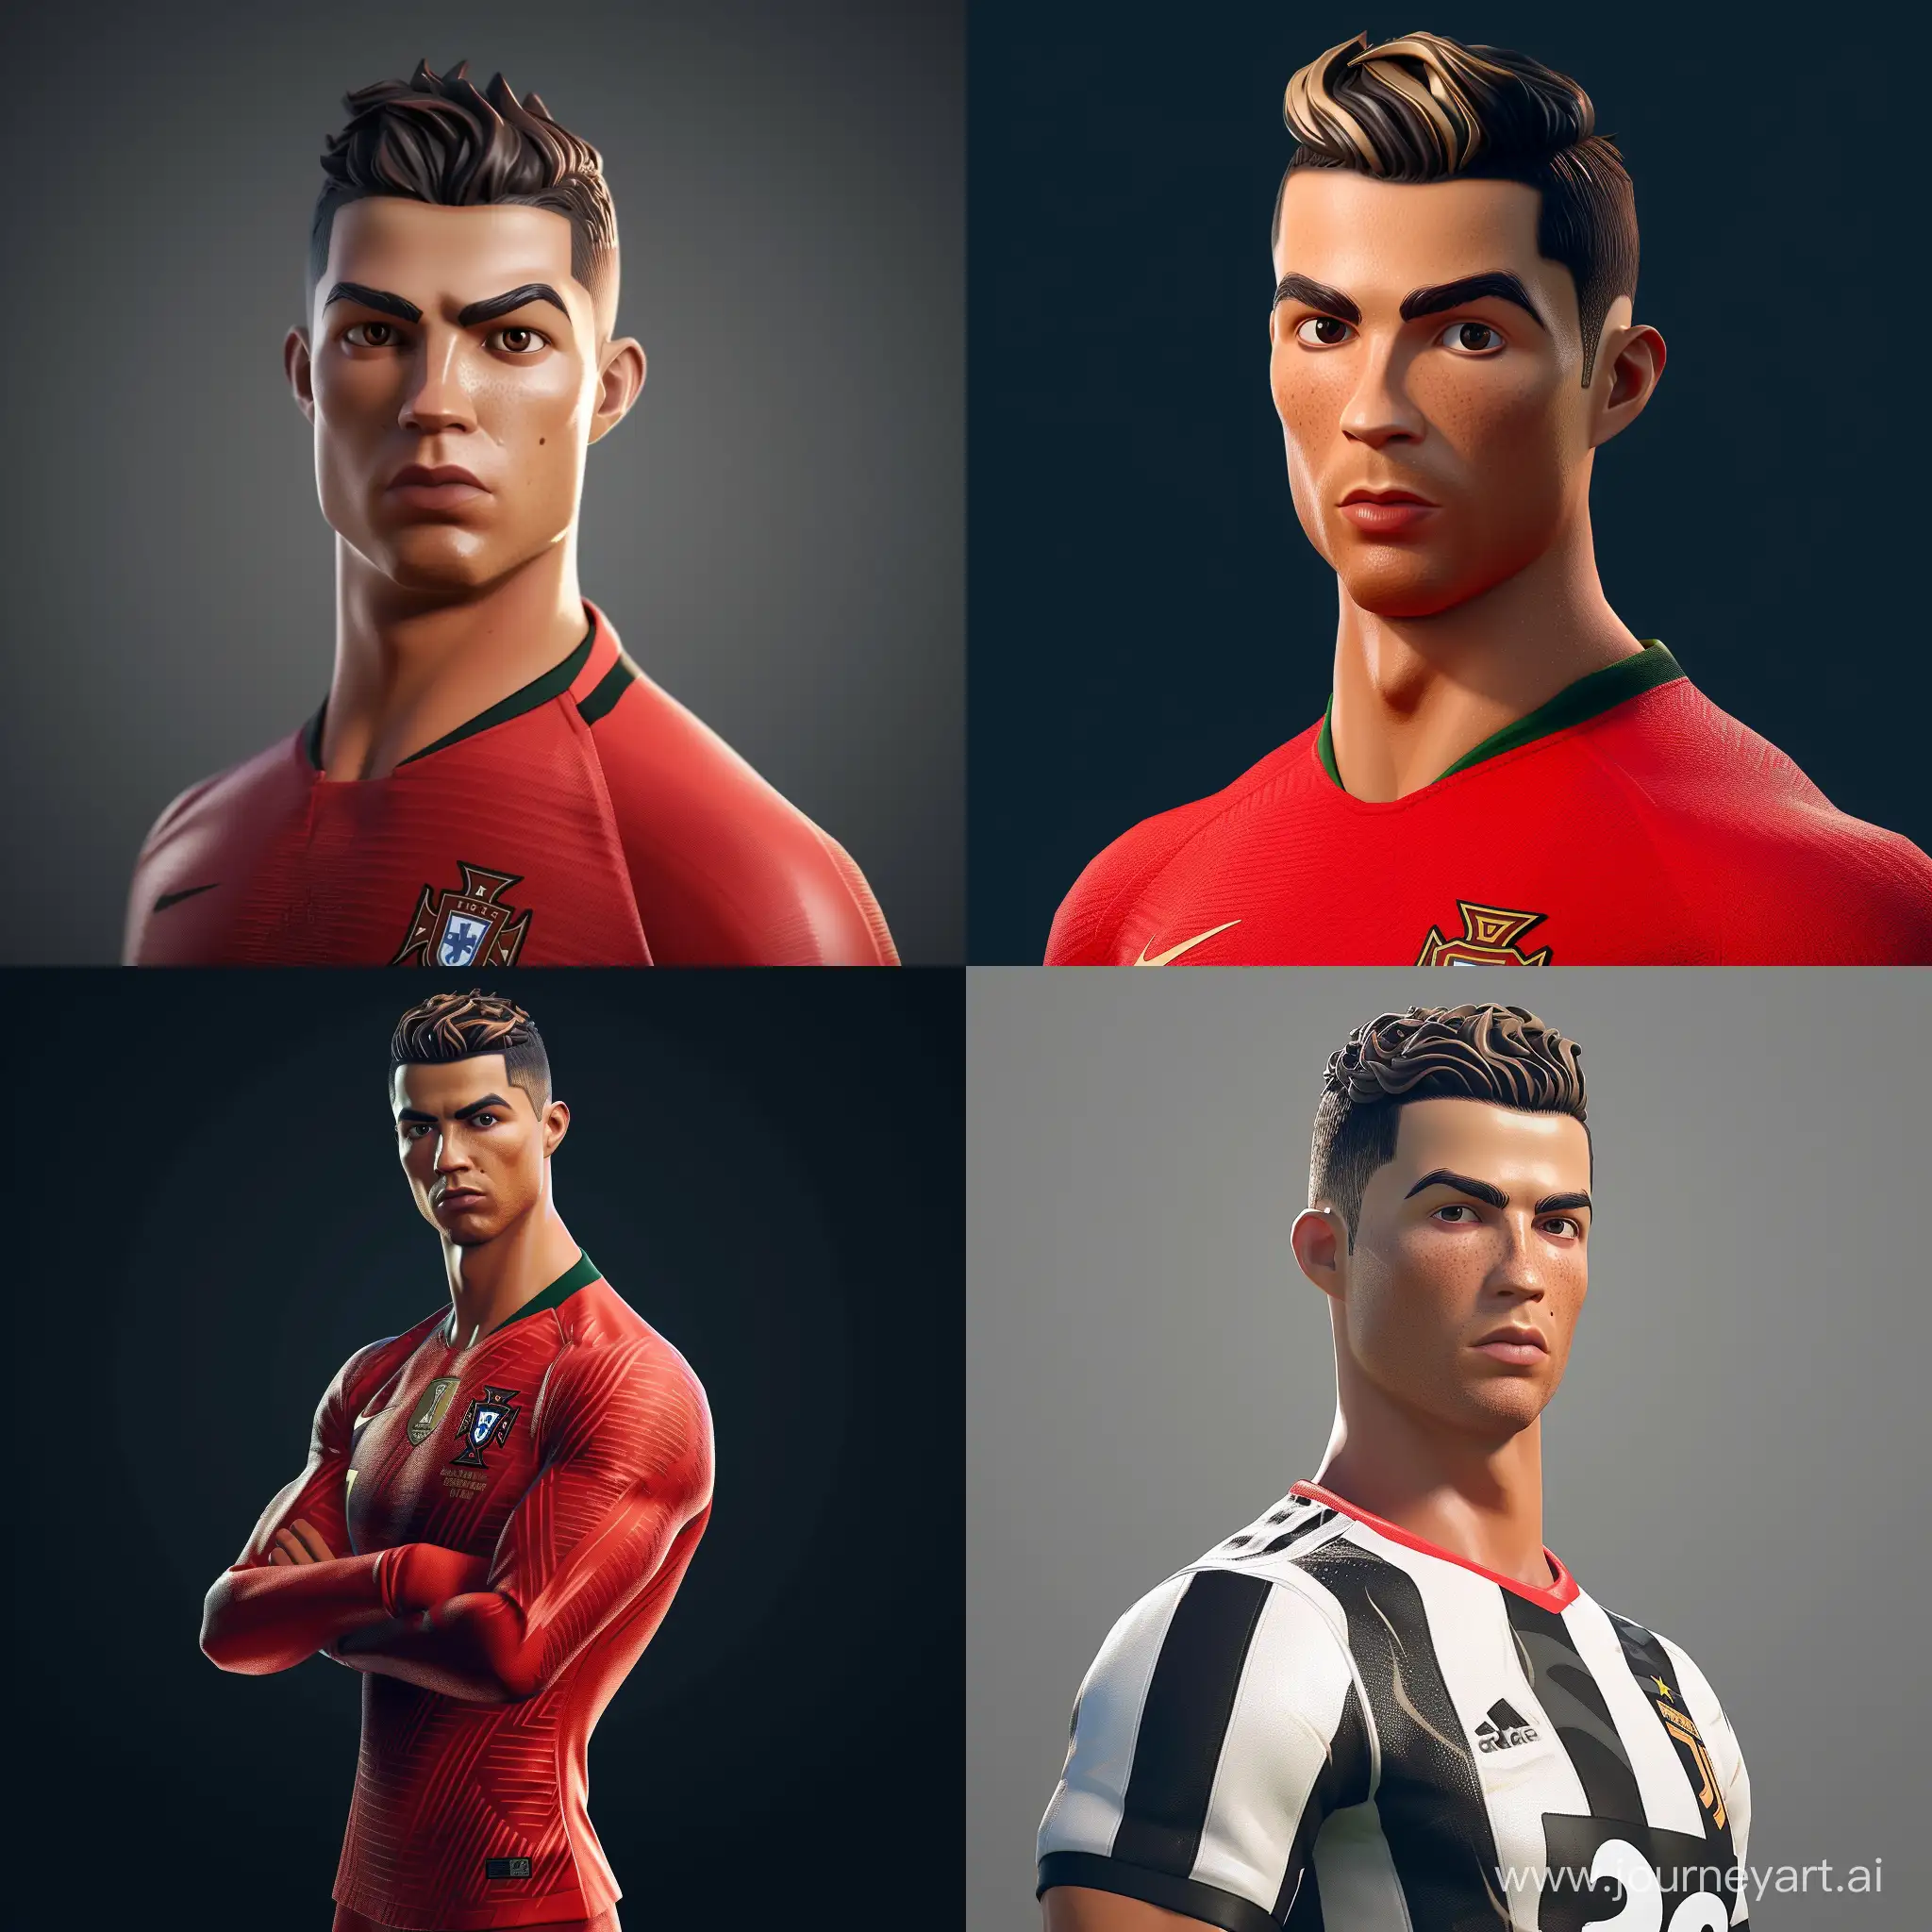 Cristiano Ronaldo fortnite 3D style

